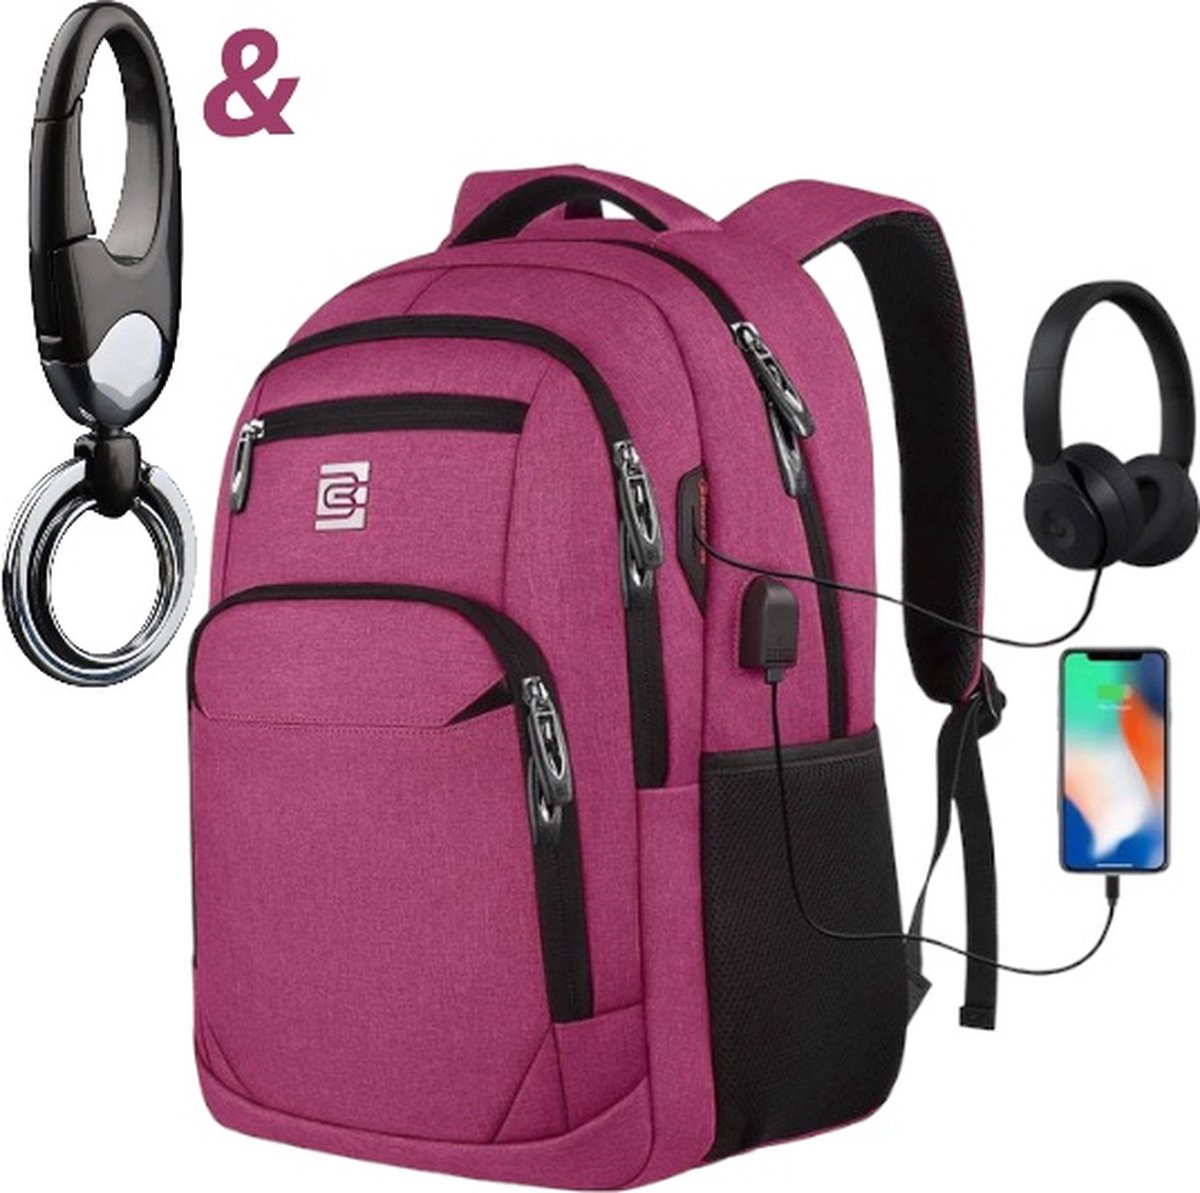 Laptoprugzak met USB-oplaadconnector voor mannen en vrouwen voor werk School Schoolrugzak voor jongens en tieners met laptopvak en antidiefstaltas, 15,6 inch roze., 15,6 inch